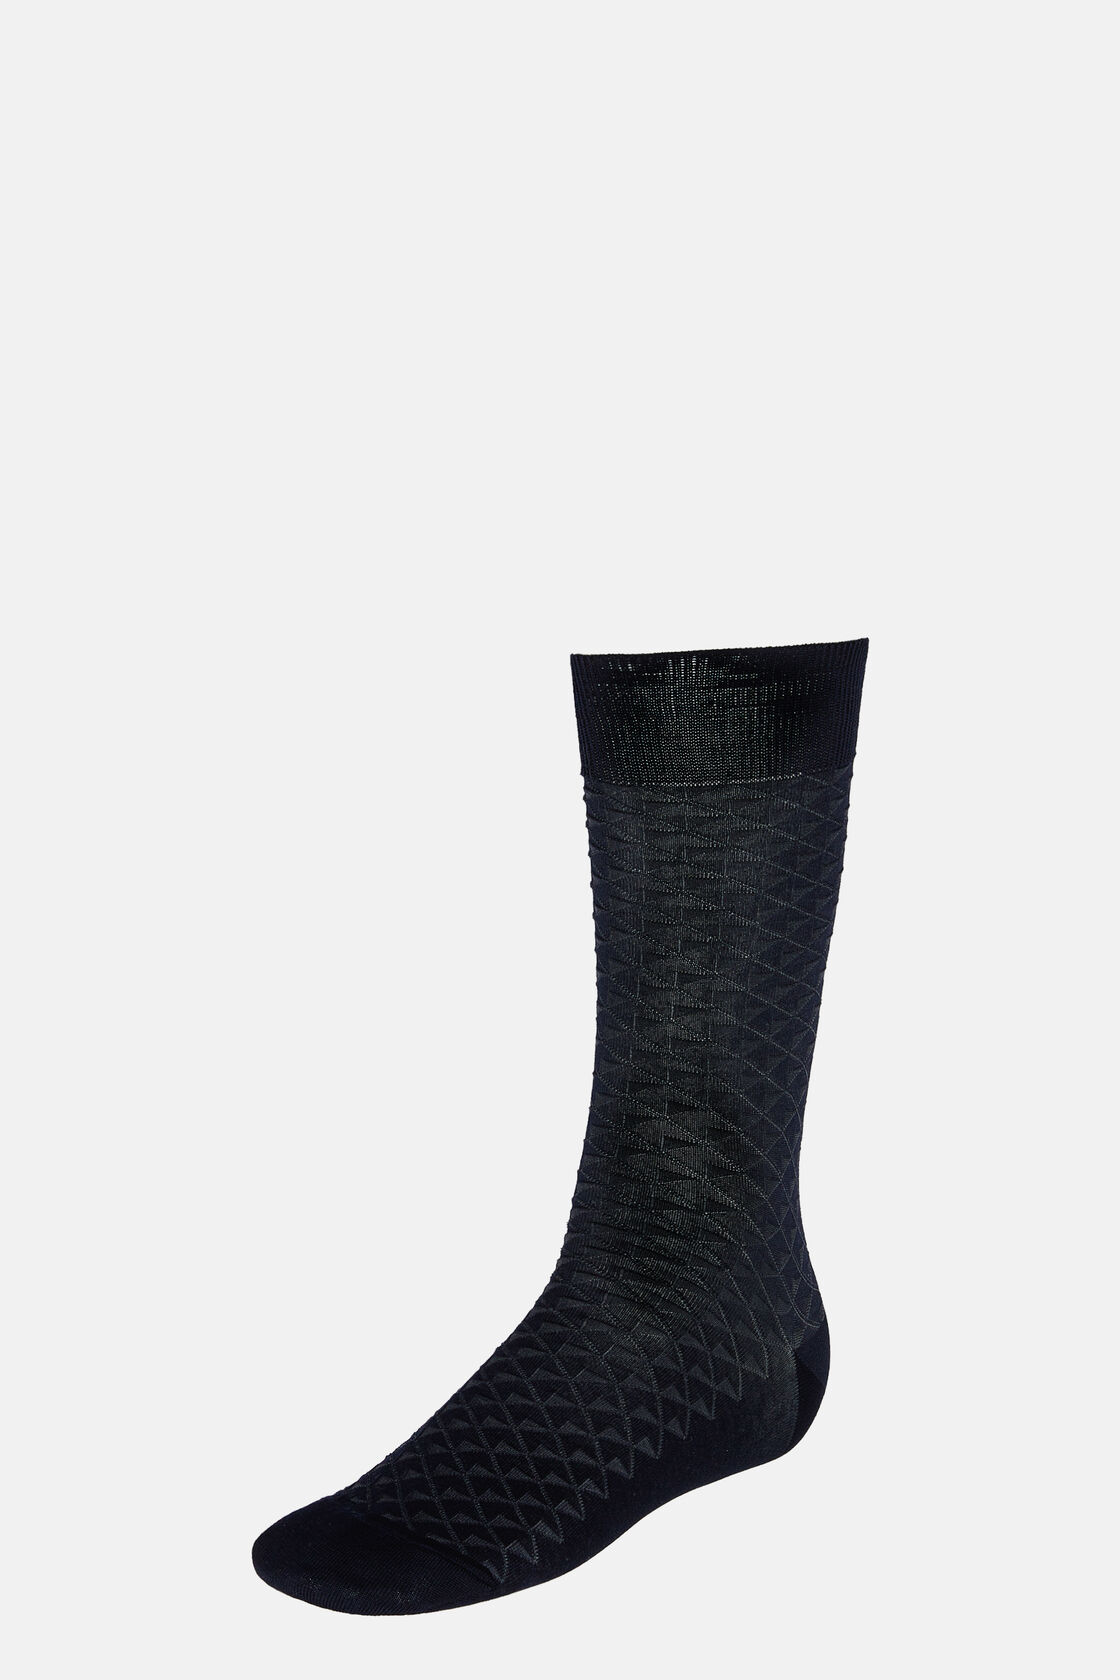 Κάλτσες ζακάρ από σύμμεικτο βαμβάκι, Navy blue, hi-res